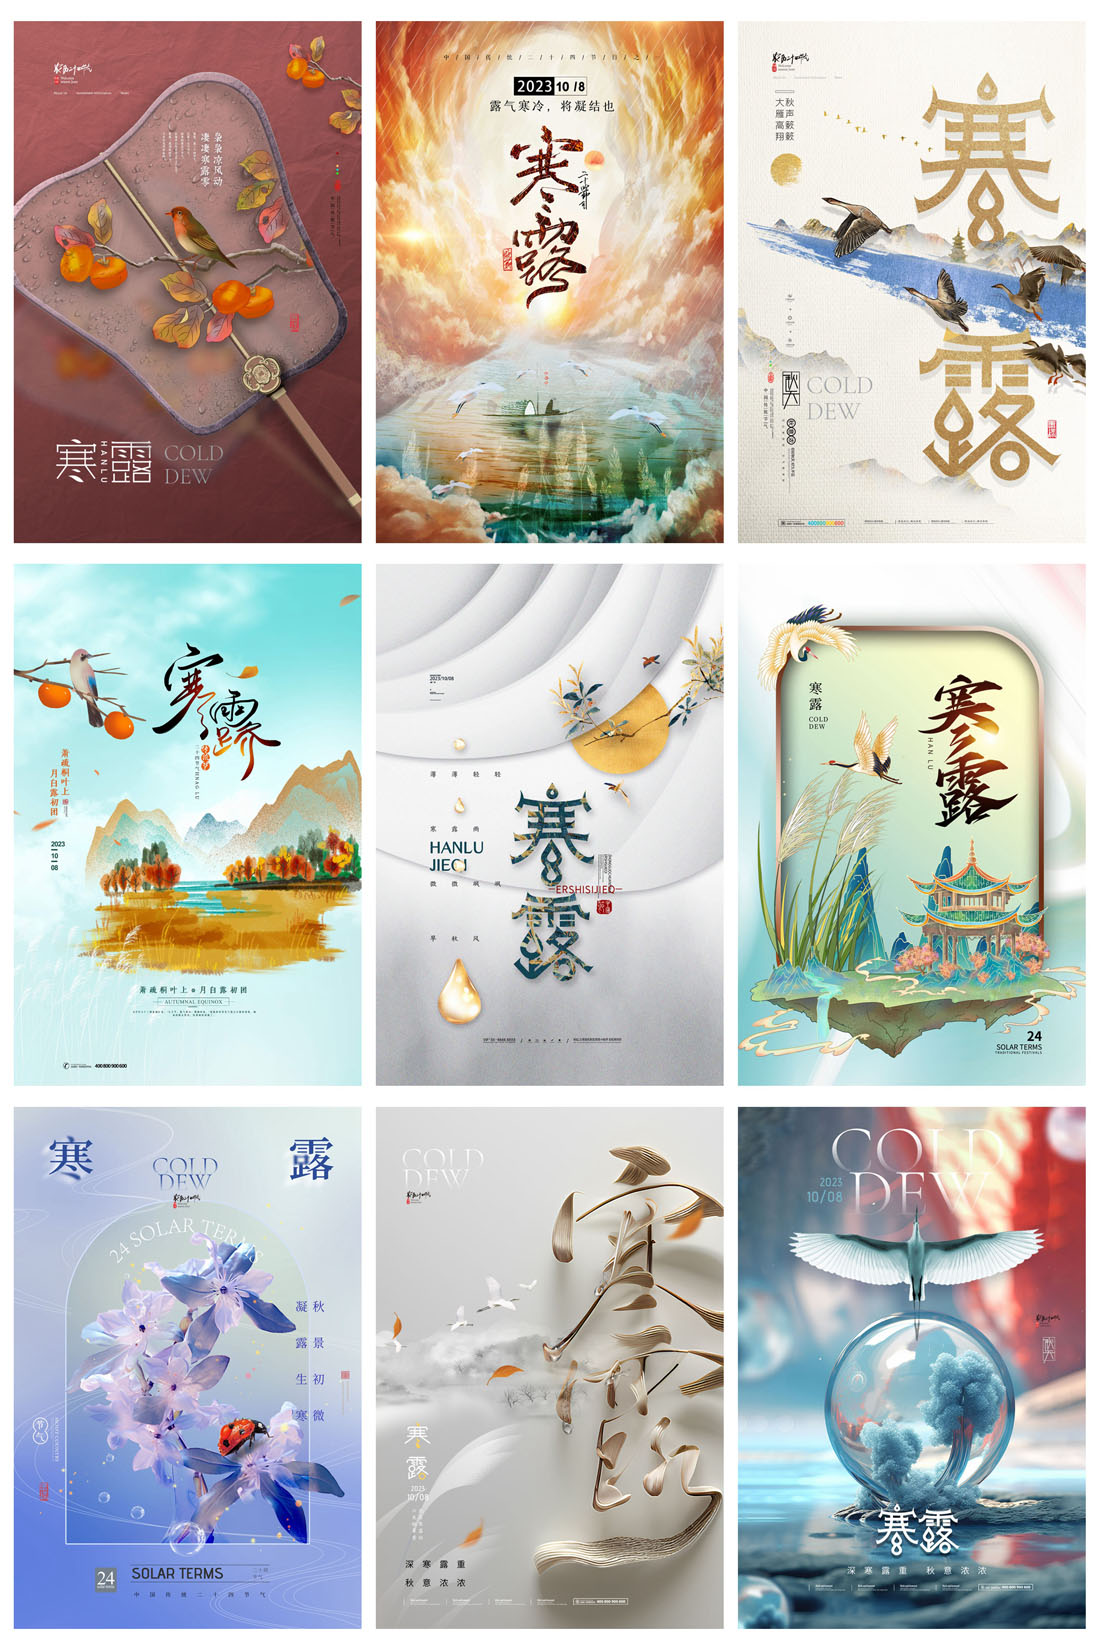 94款中国传统二十四节气之寒露节日海报PSD模板 设计素材 第15张